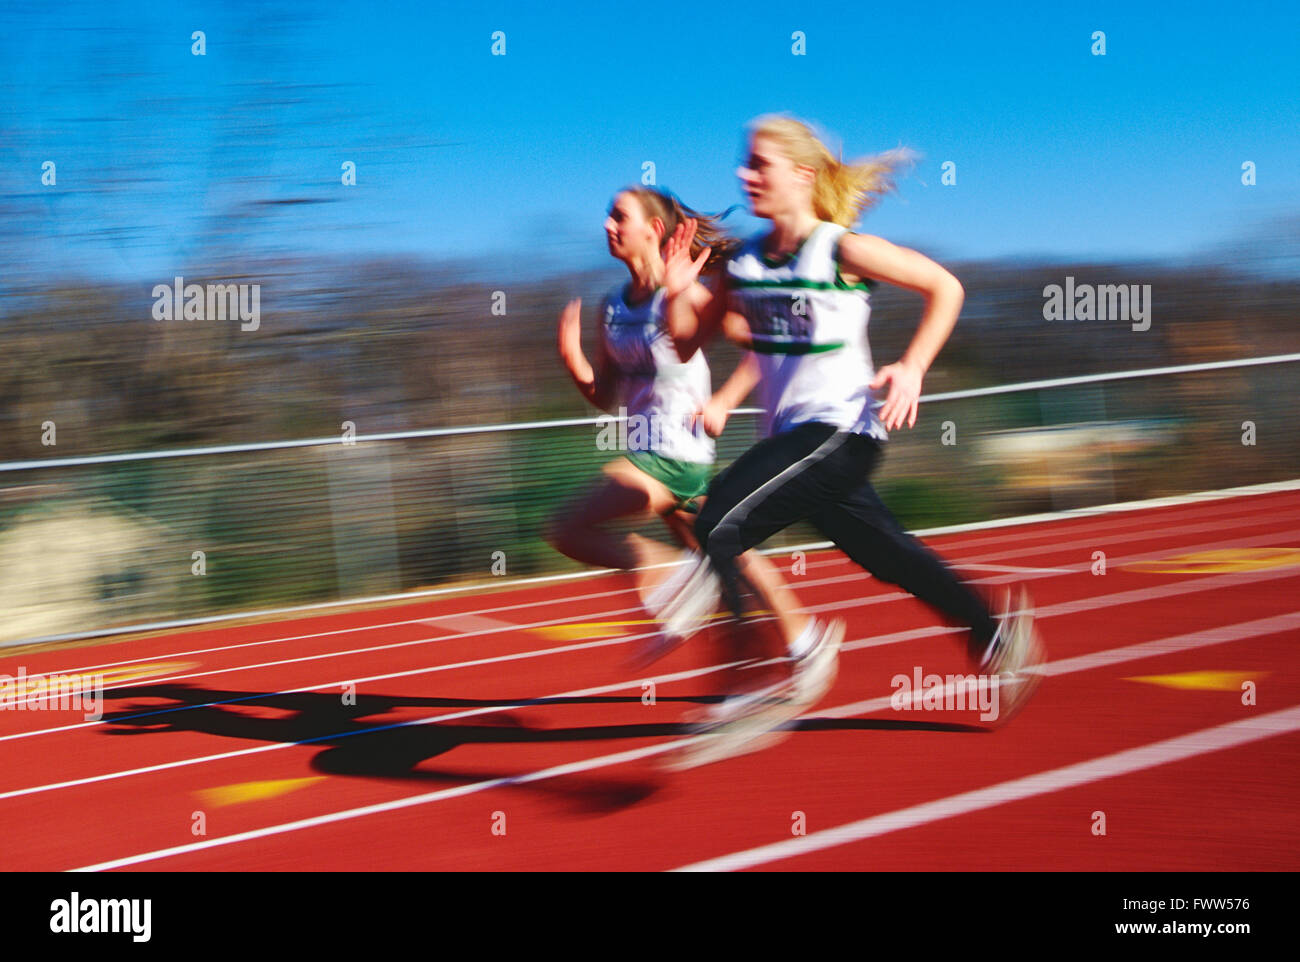 Pan Unschärfe Blick auf High School Mädchen Leichtathletik-Team läuft auf synthetische Oberfläche Outdoor-Strecke Stockfoto